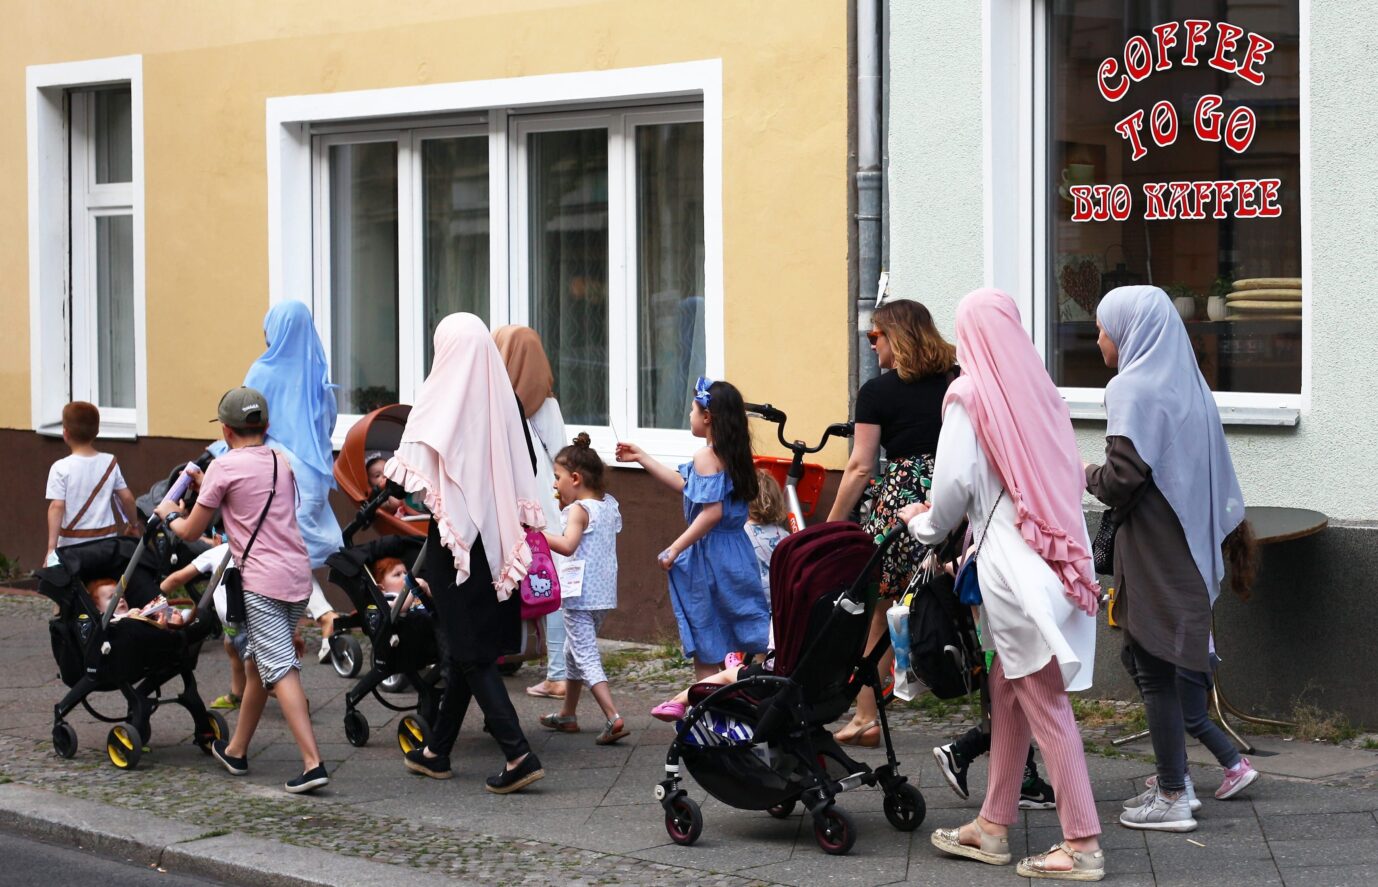 Muslimische Zweitfrauen mit ihren Kindern prägen inzwischen vielerorts das Stadtbild. Symbolfoto aus Schöneberg: picture alliance / Wolfram Steinberg